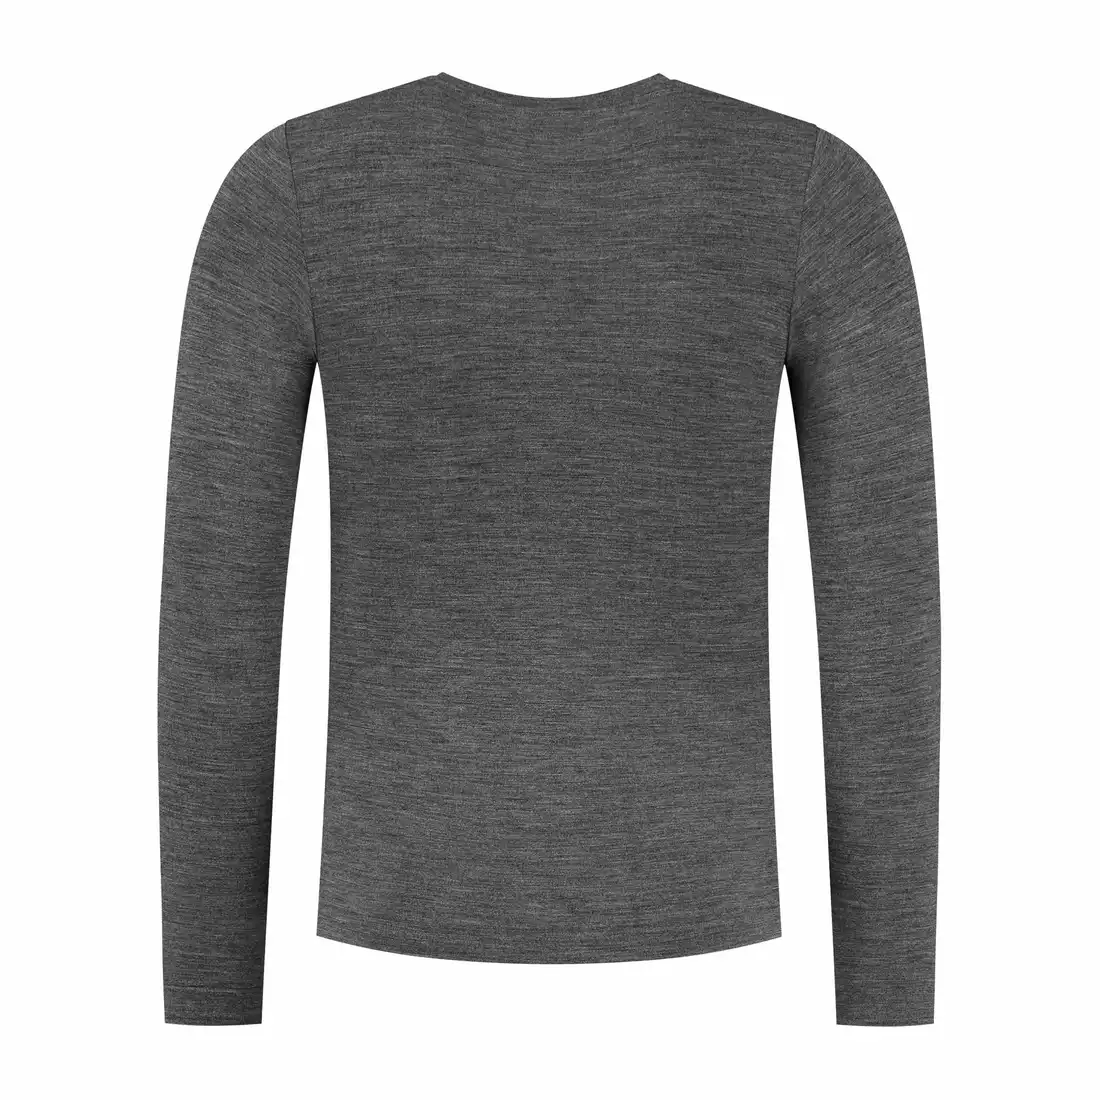 ROGELLI MERINO men's thermal shirt, gray